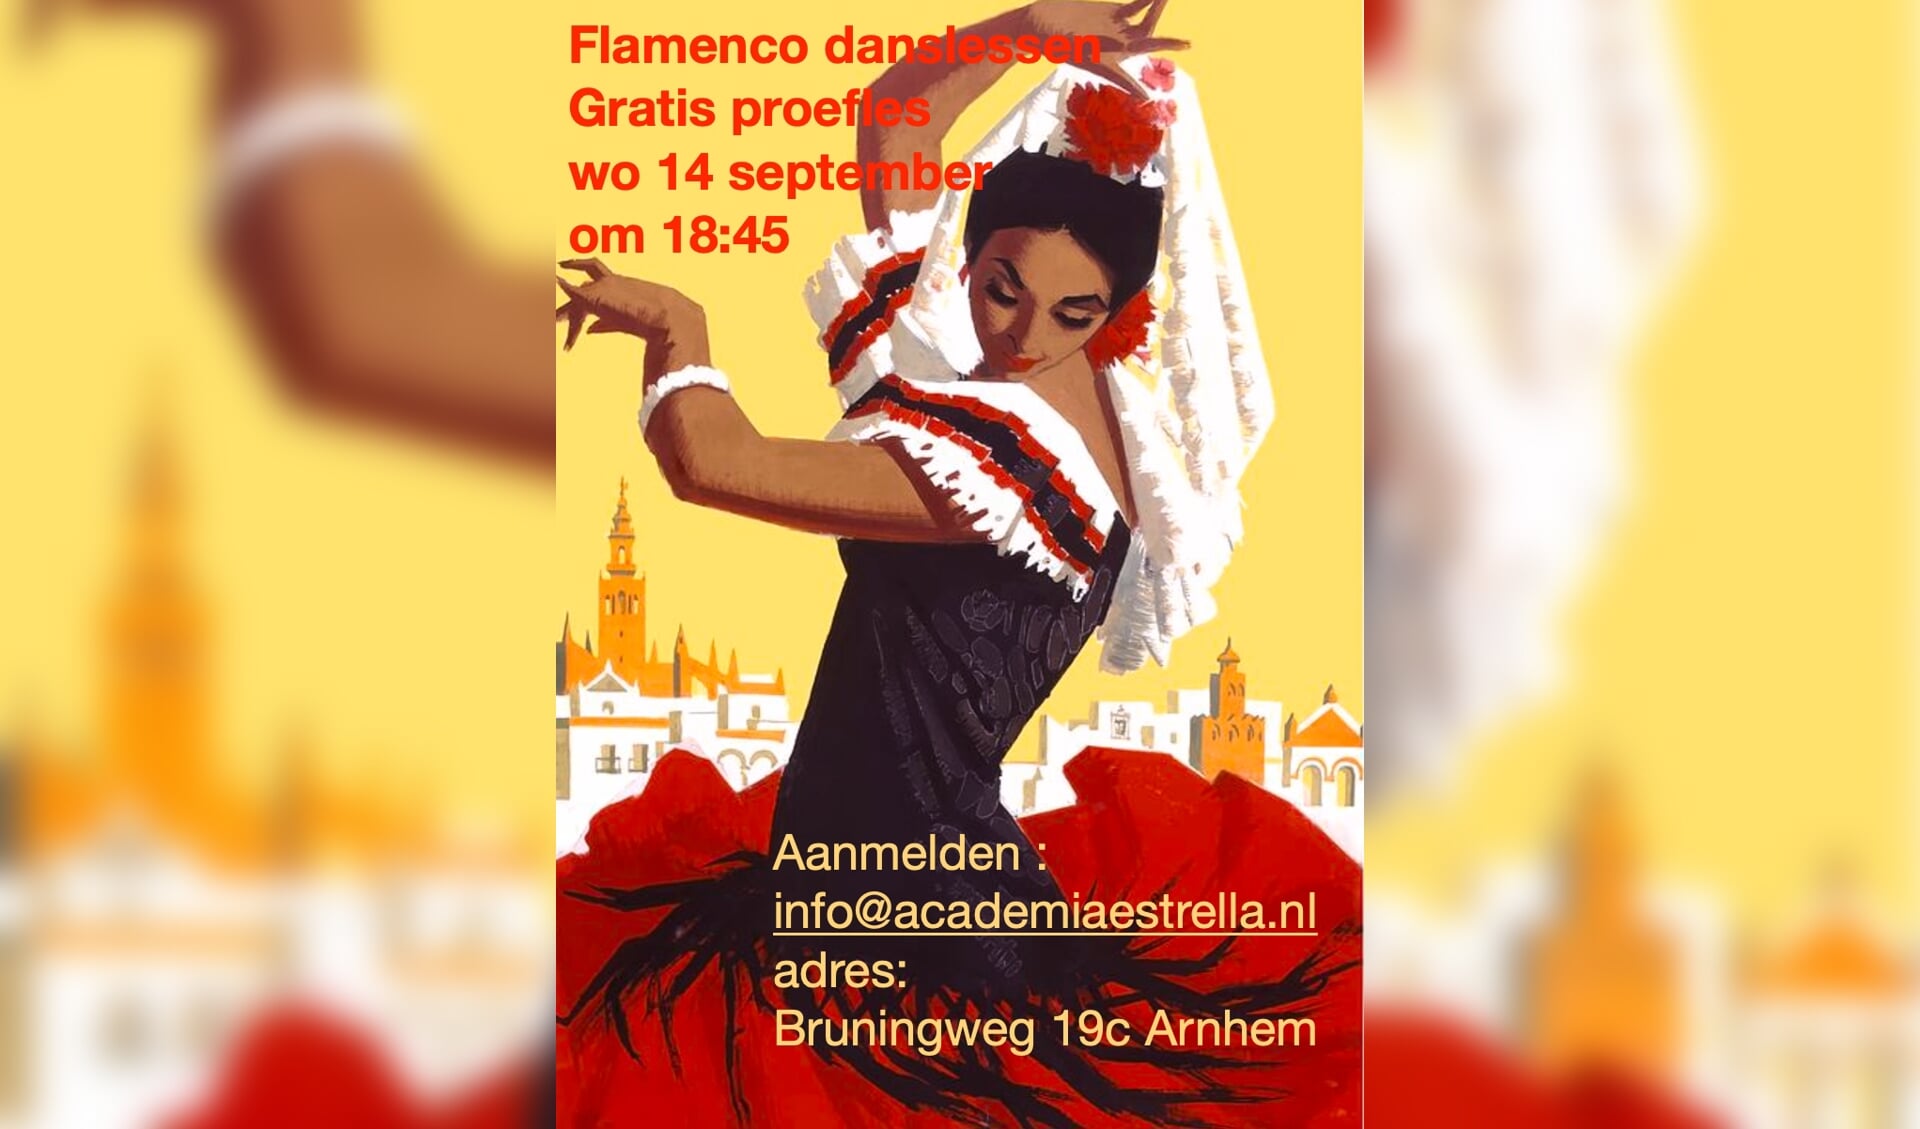 Flamenco danslessen, proefles op wo. 14 september